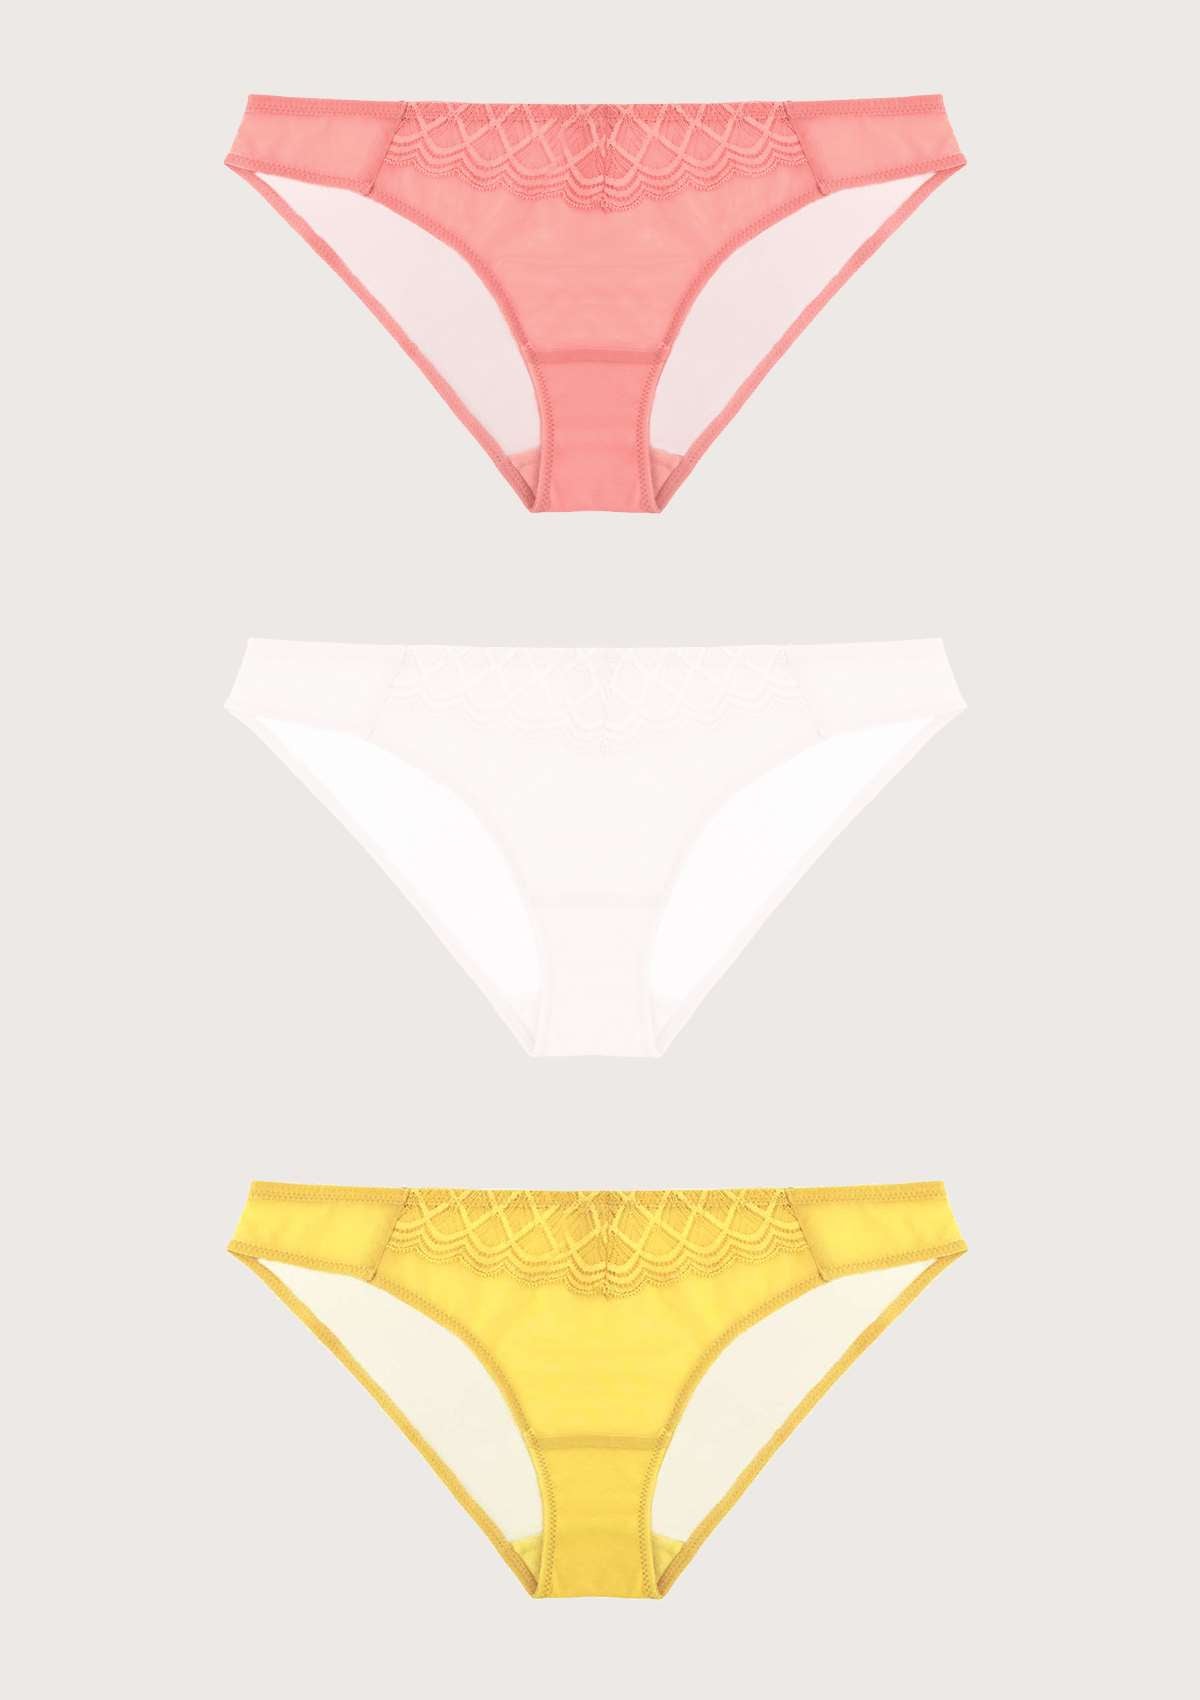 HSIA Plaid Lace Bikini Panties 3 Pack - M / Black+Yellow+Pink